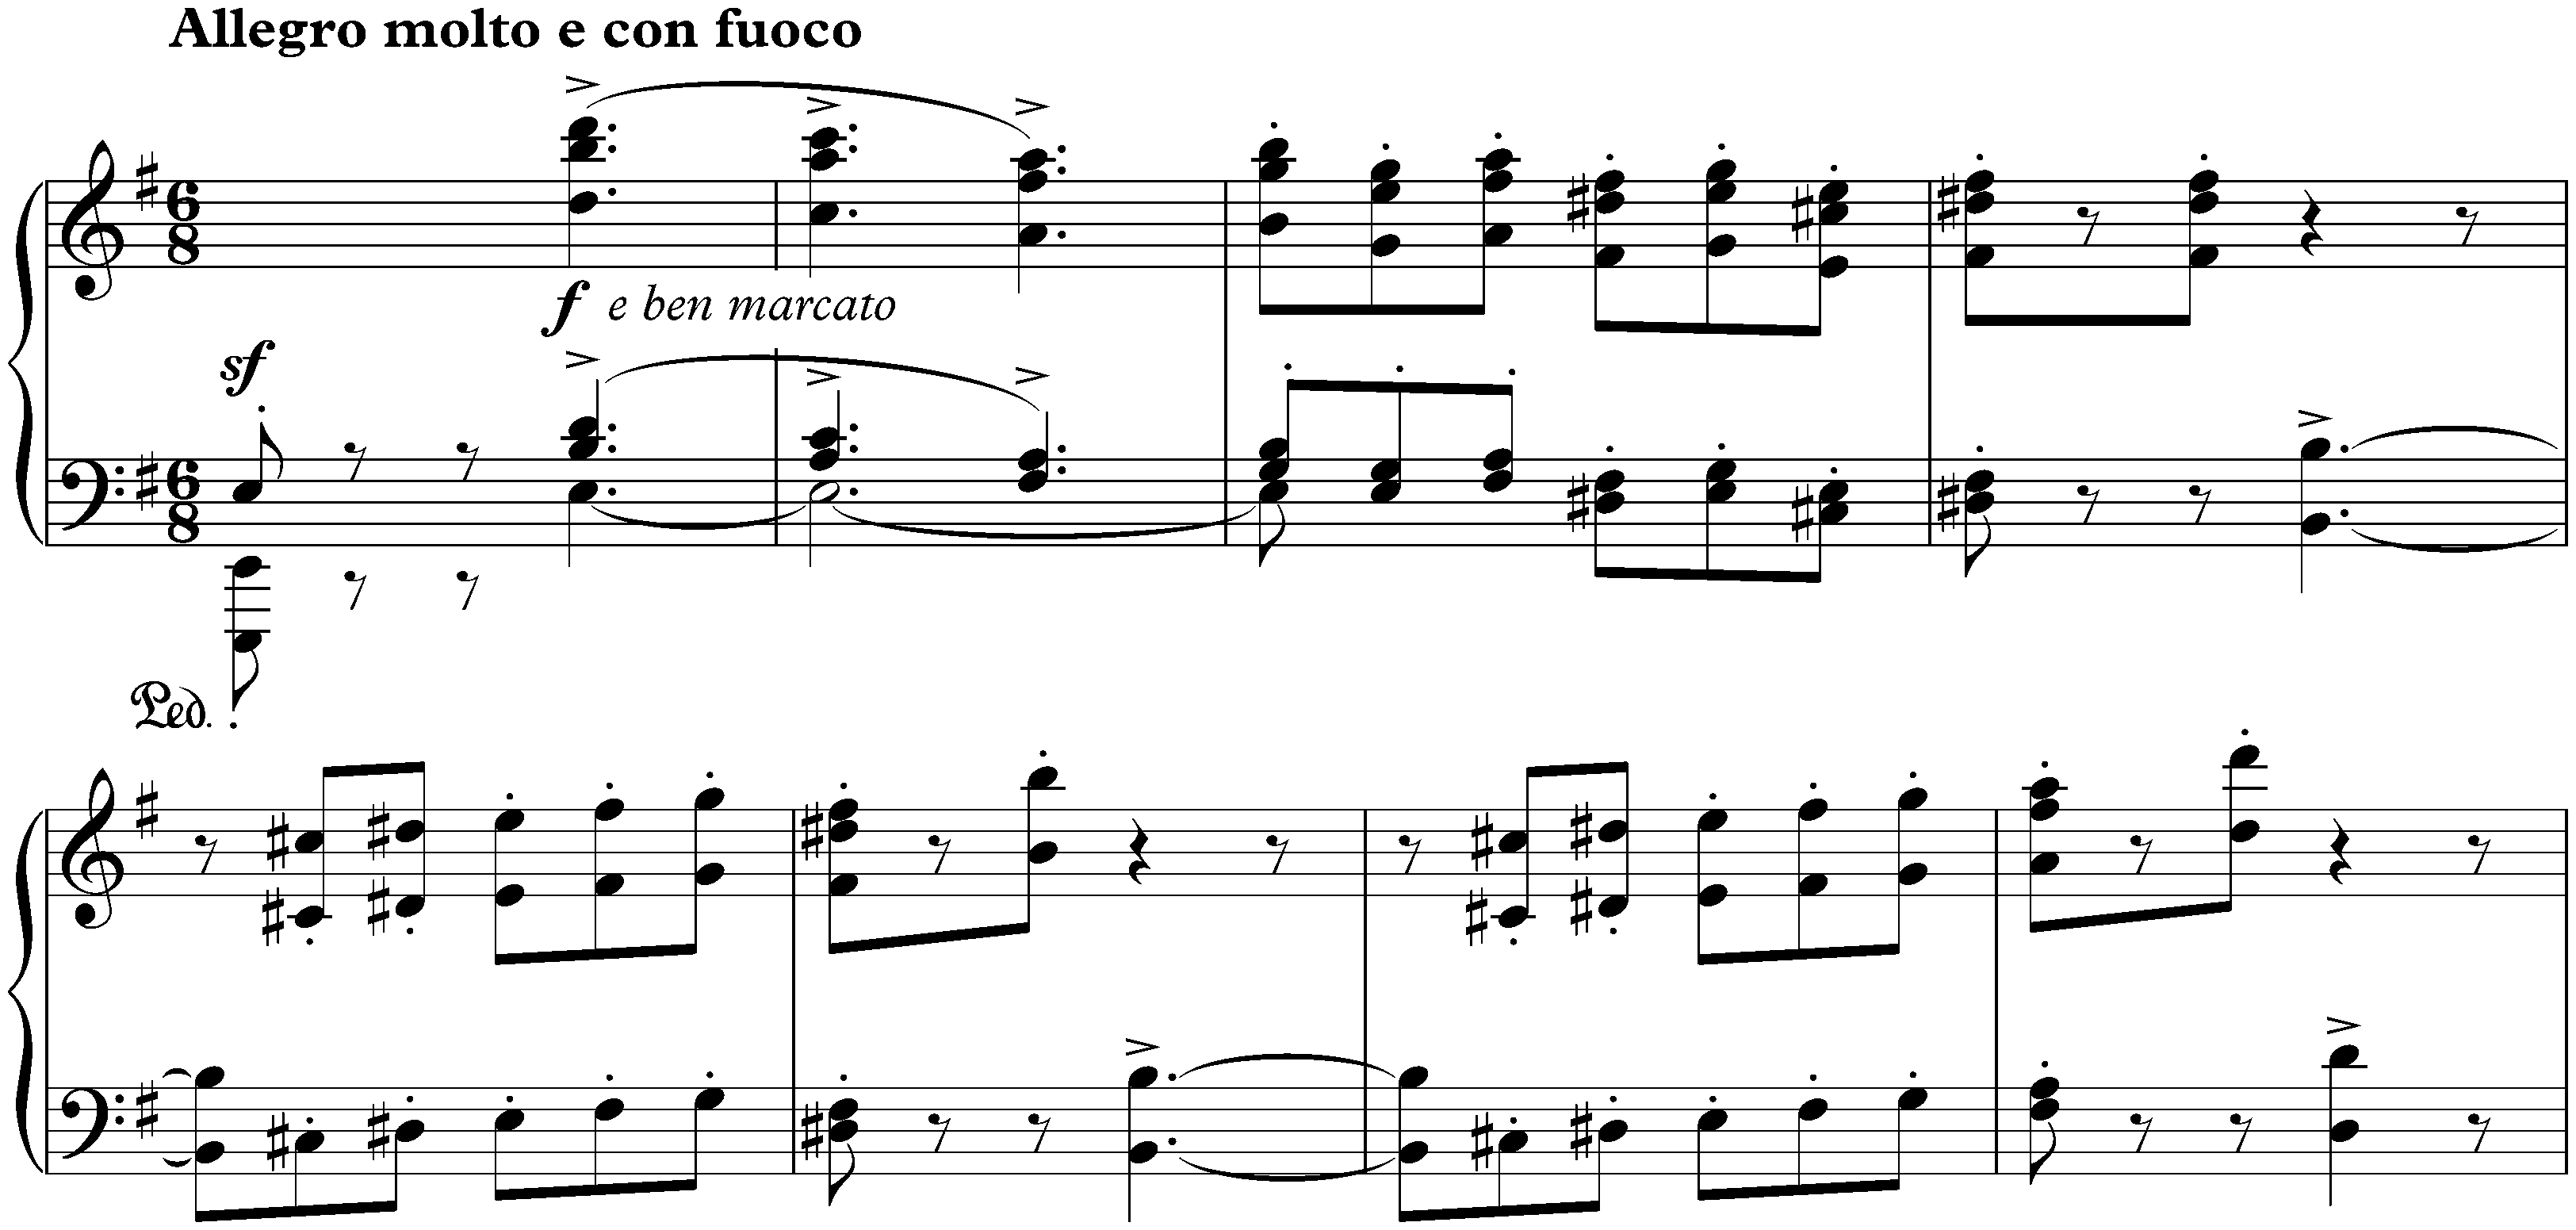 Sonata no. 1 in C major, op. 1; 3. Scherzo: Allegro molto e con fuoco